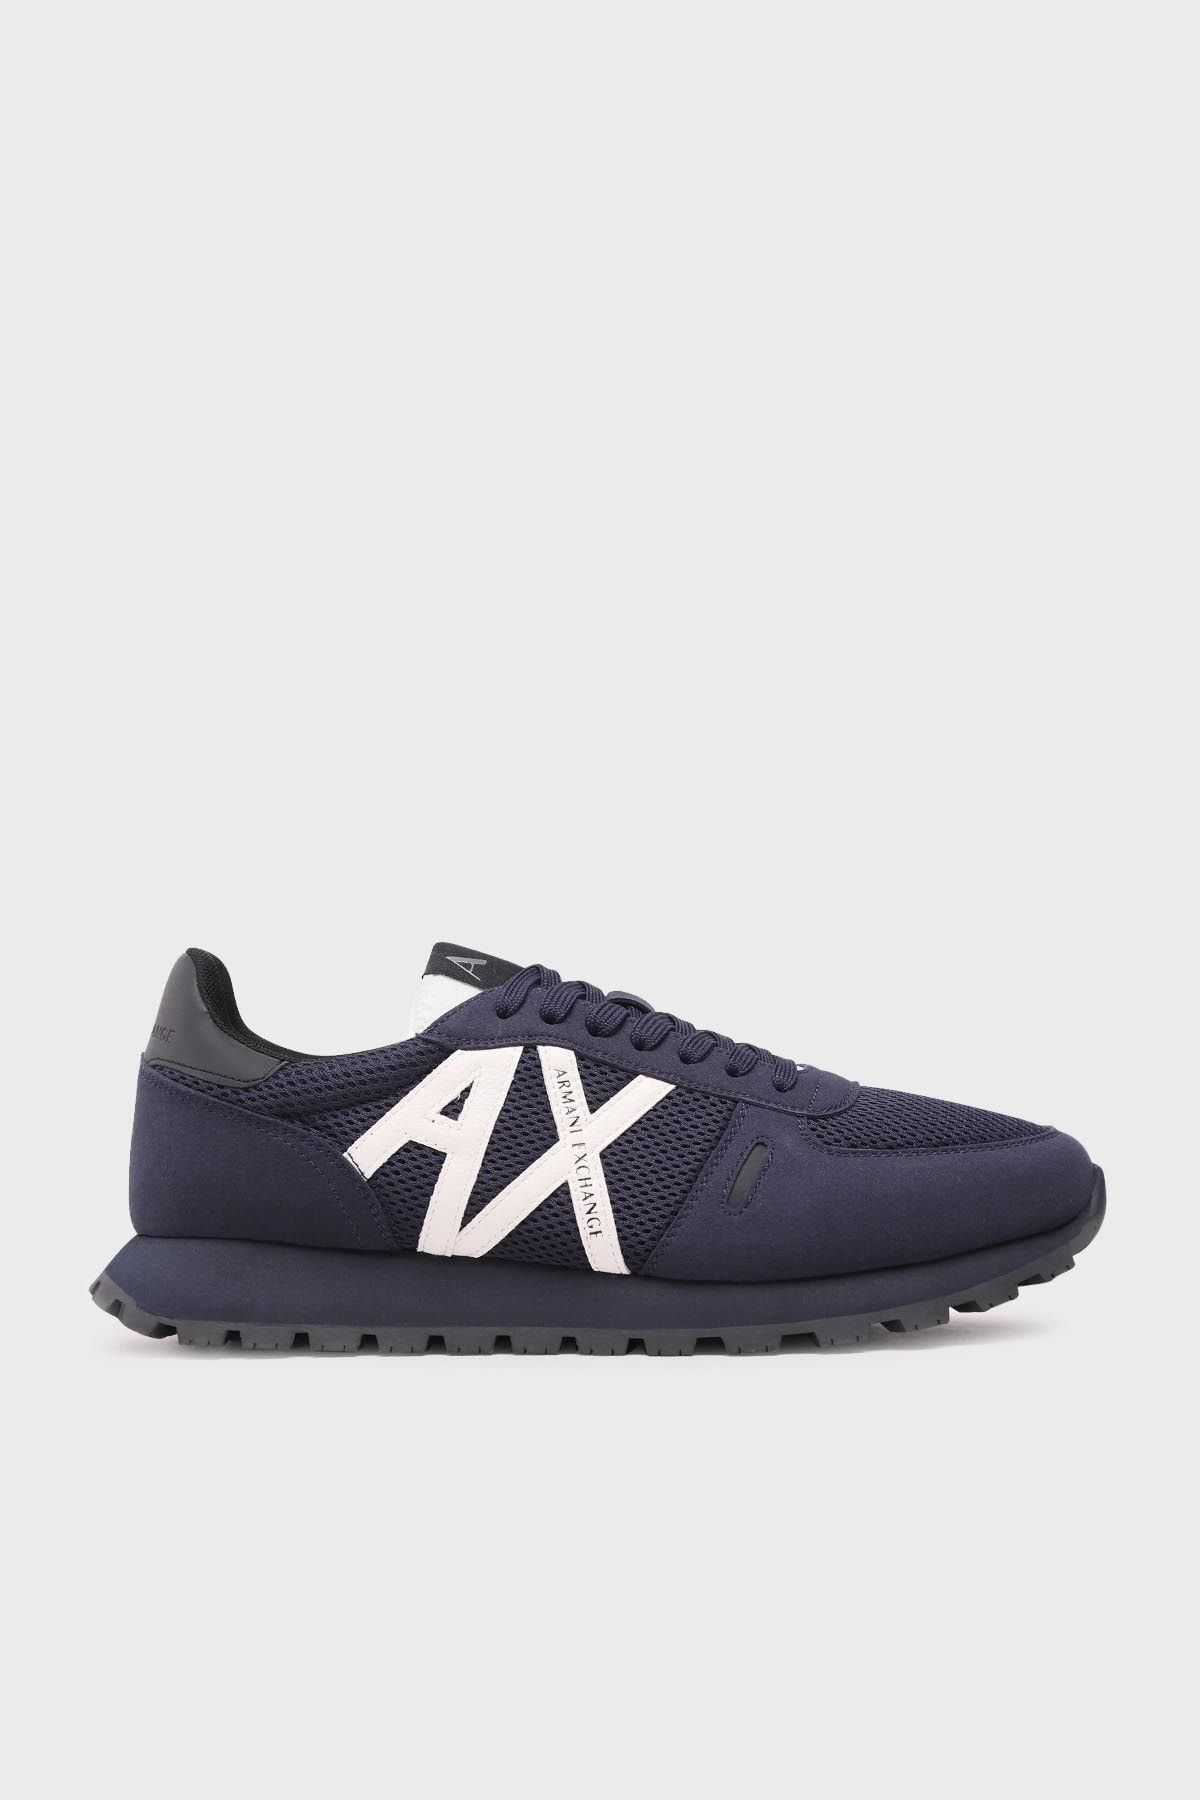 Armani Exchange Logolu Bağlamalı Sneaker Ayakkabı Erkek AYAKKABI XUX169 XV660 N151